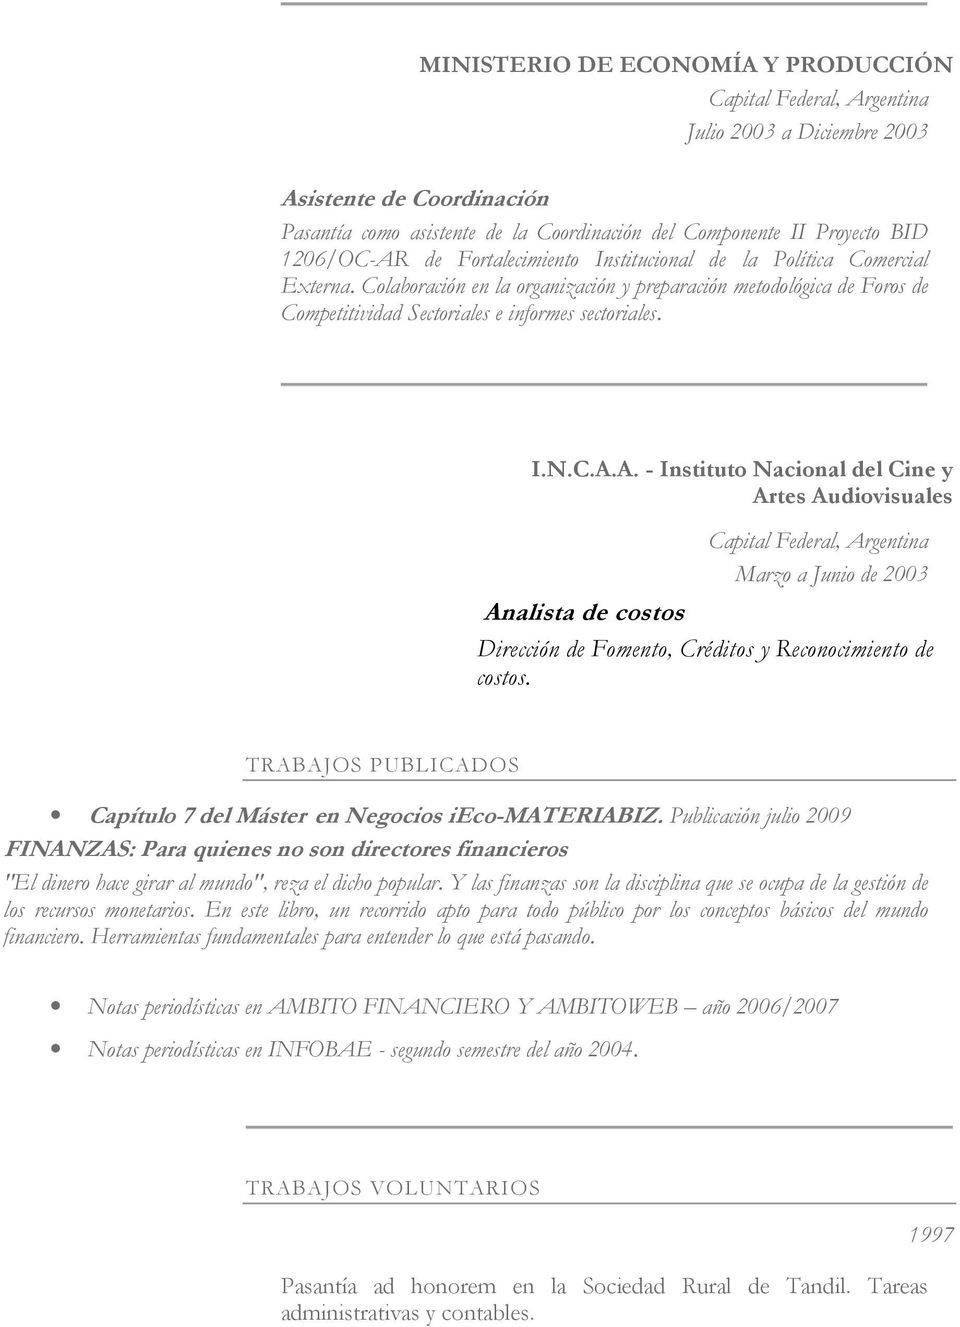 A. - Instituto Nacional del Cine y Artes Audiovisuales Analista de costos Marzo a Junio de 2003 Dirección de Fomento, Créditos y Reconocimiento de costos.